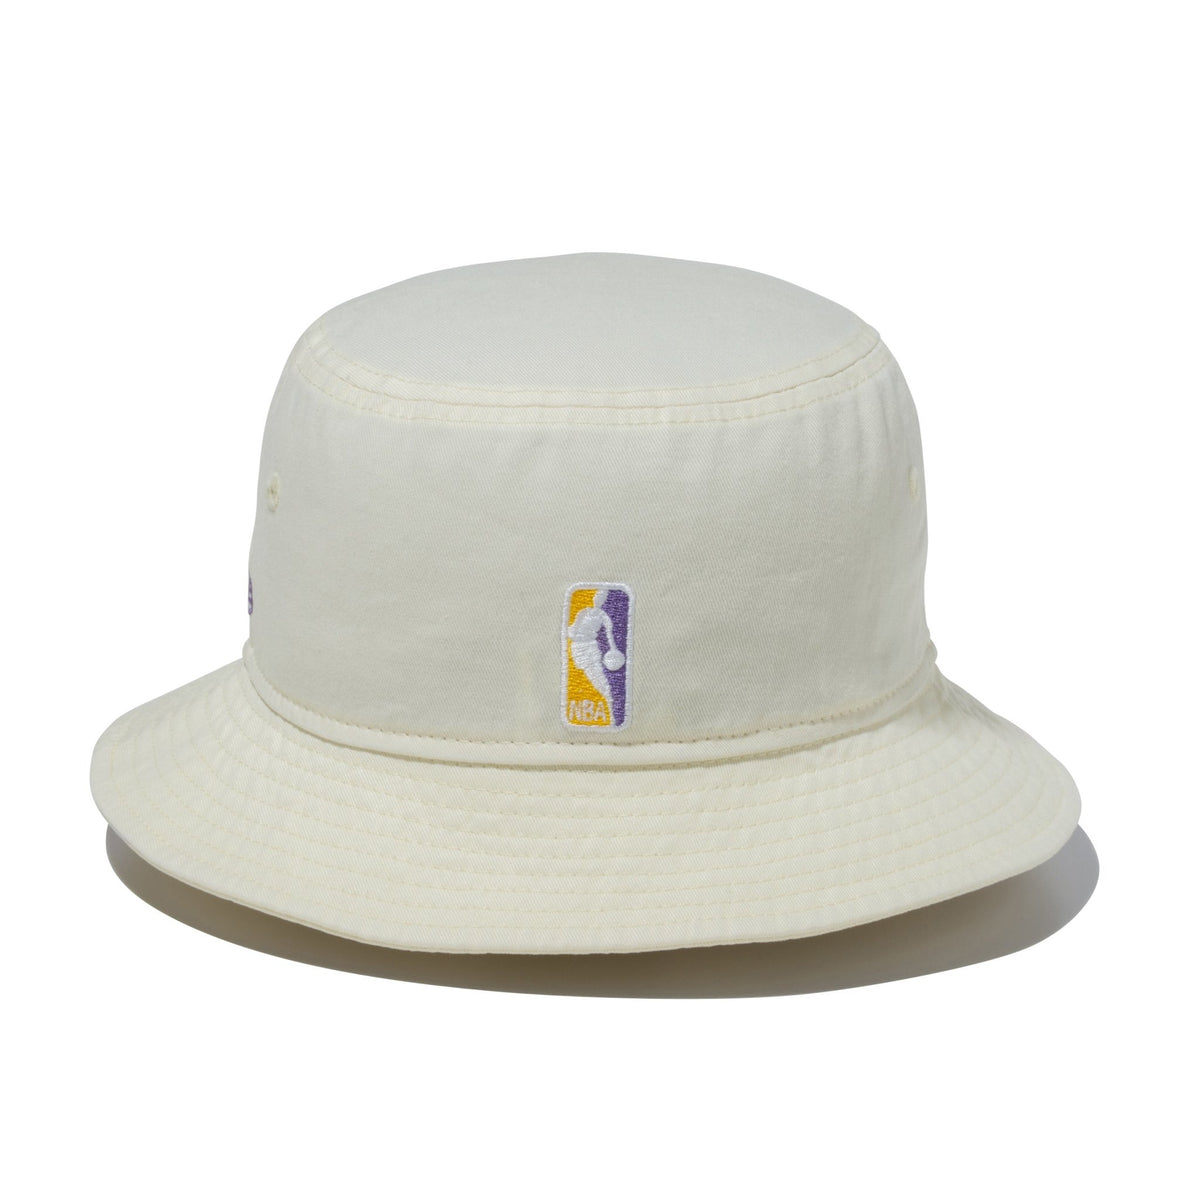 バケット01 NBA Bucket Hat ロサンゼルス・レイカーズ クロームホワイト